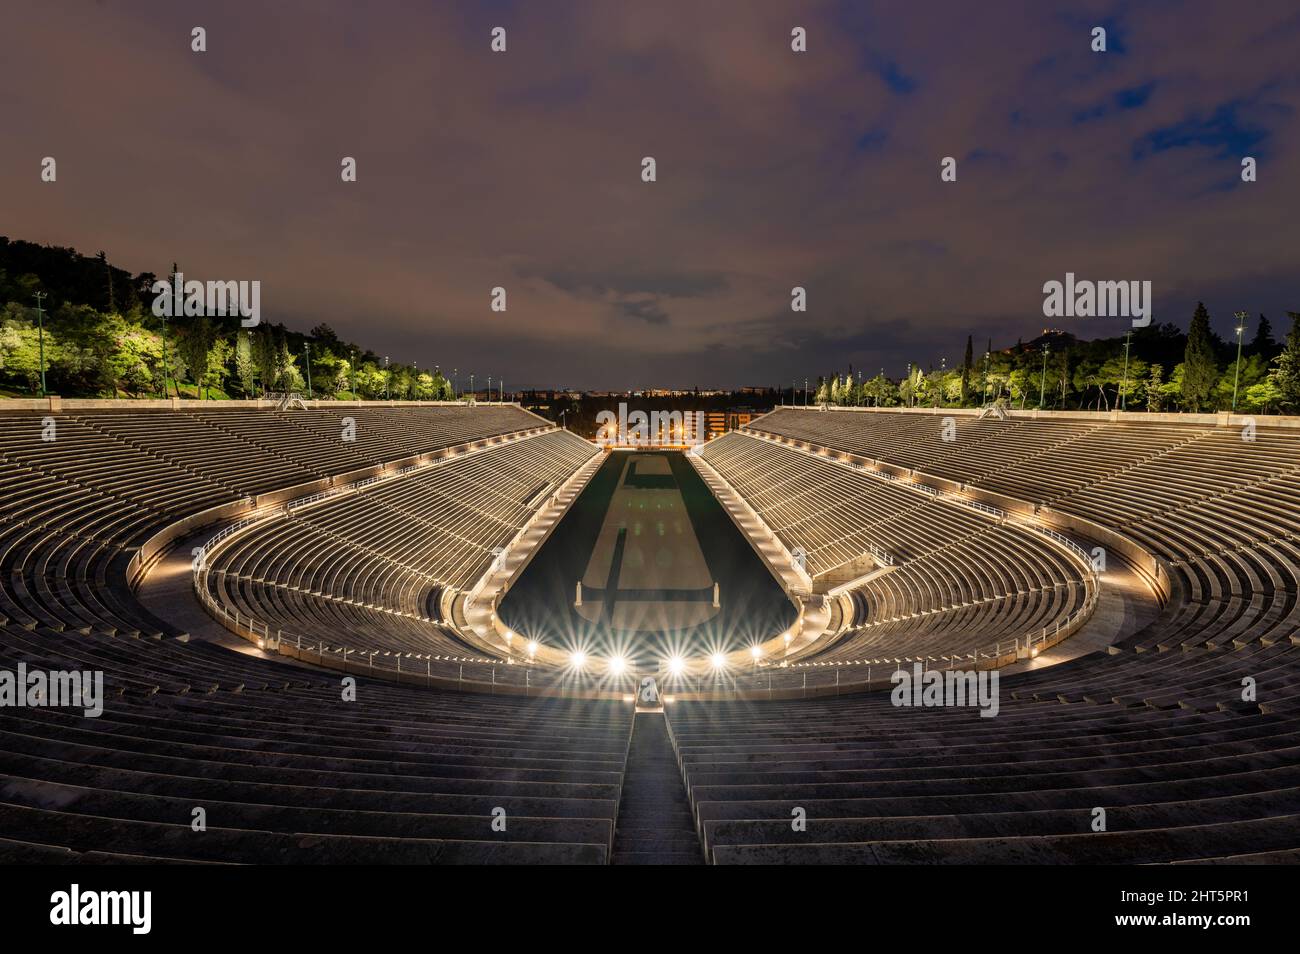 Stade panathénaïque illuminé à Athènes, Grèce au crépuscule Banque D'Images